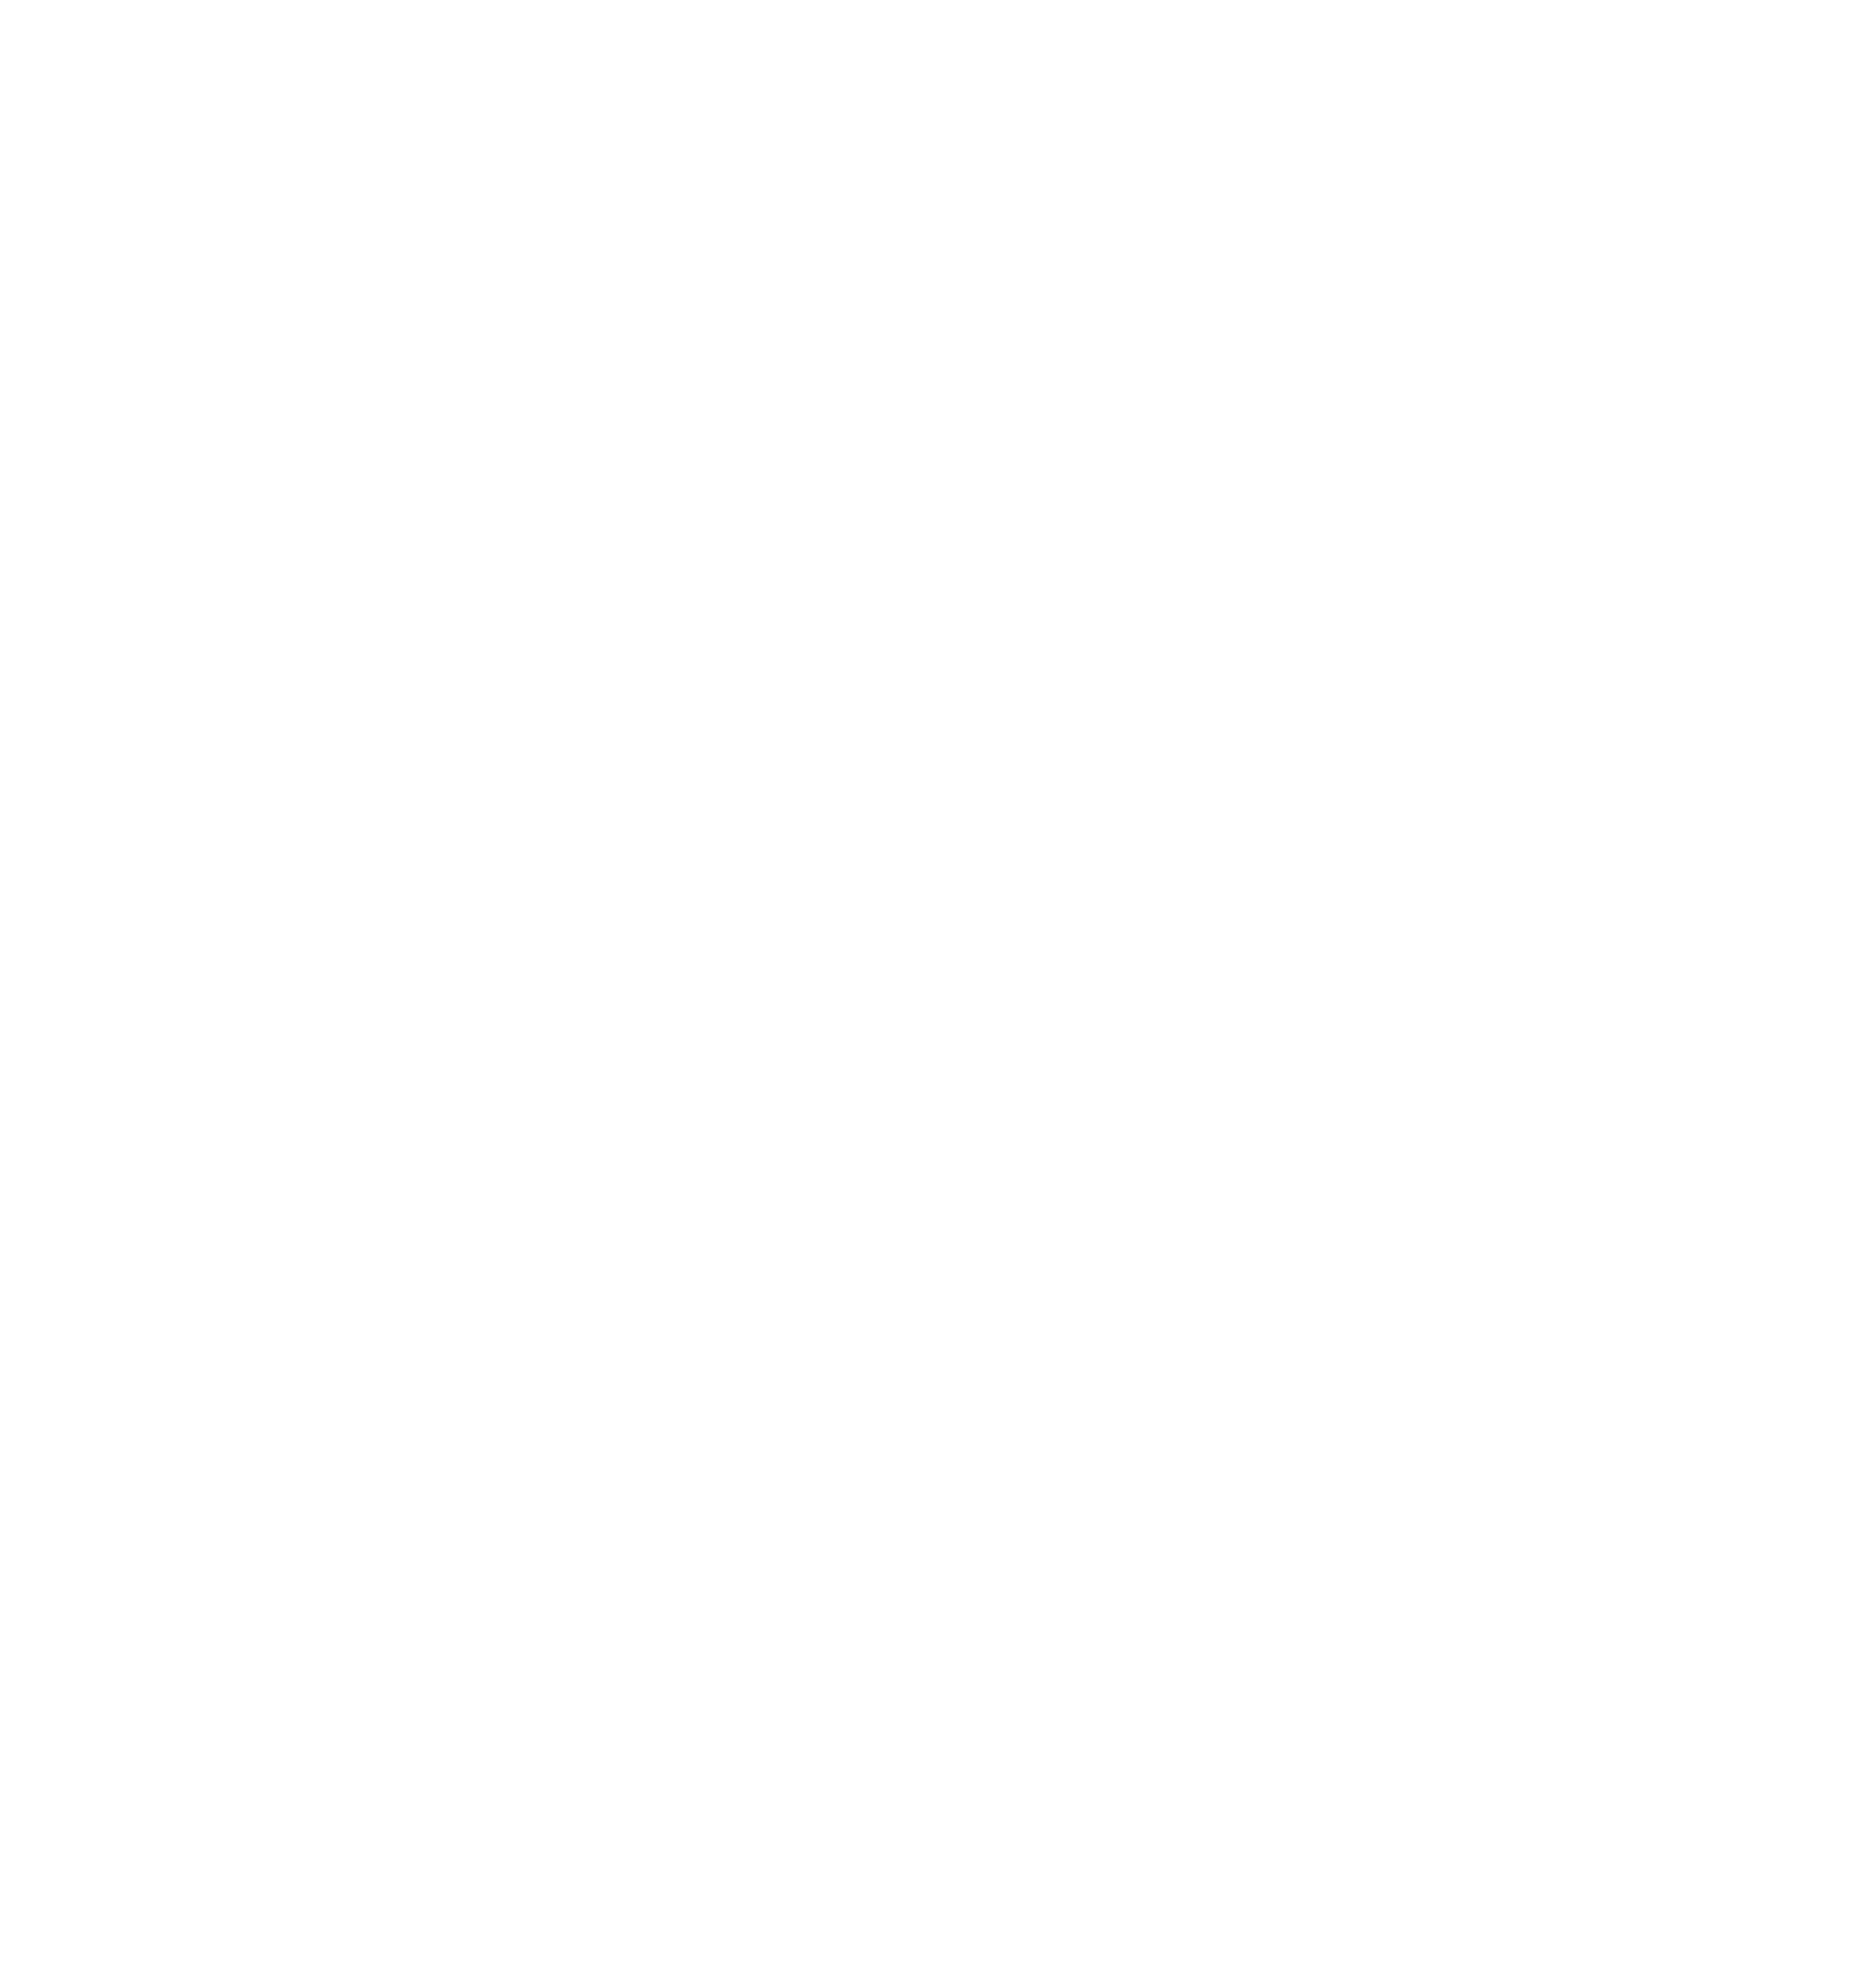 Umbria in Voce